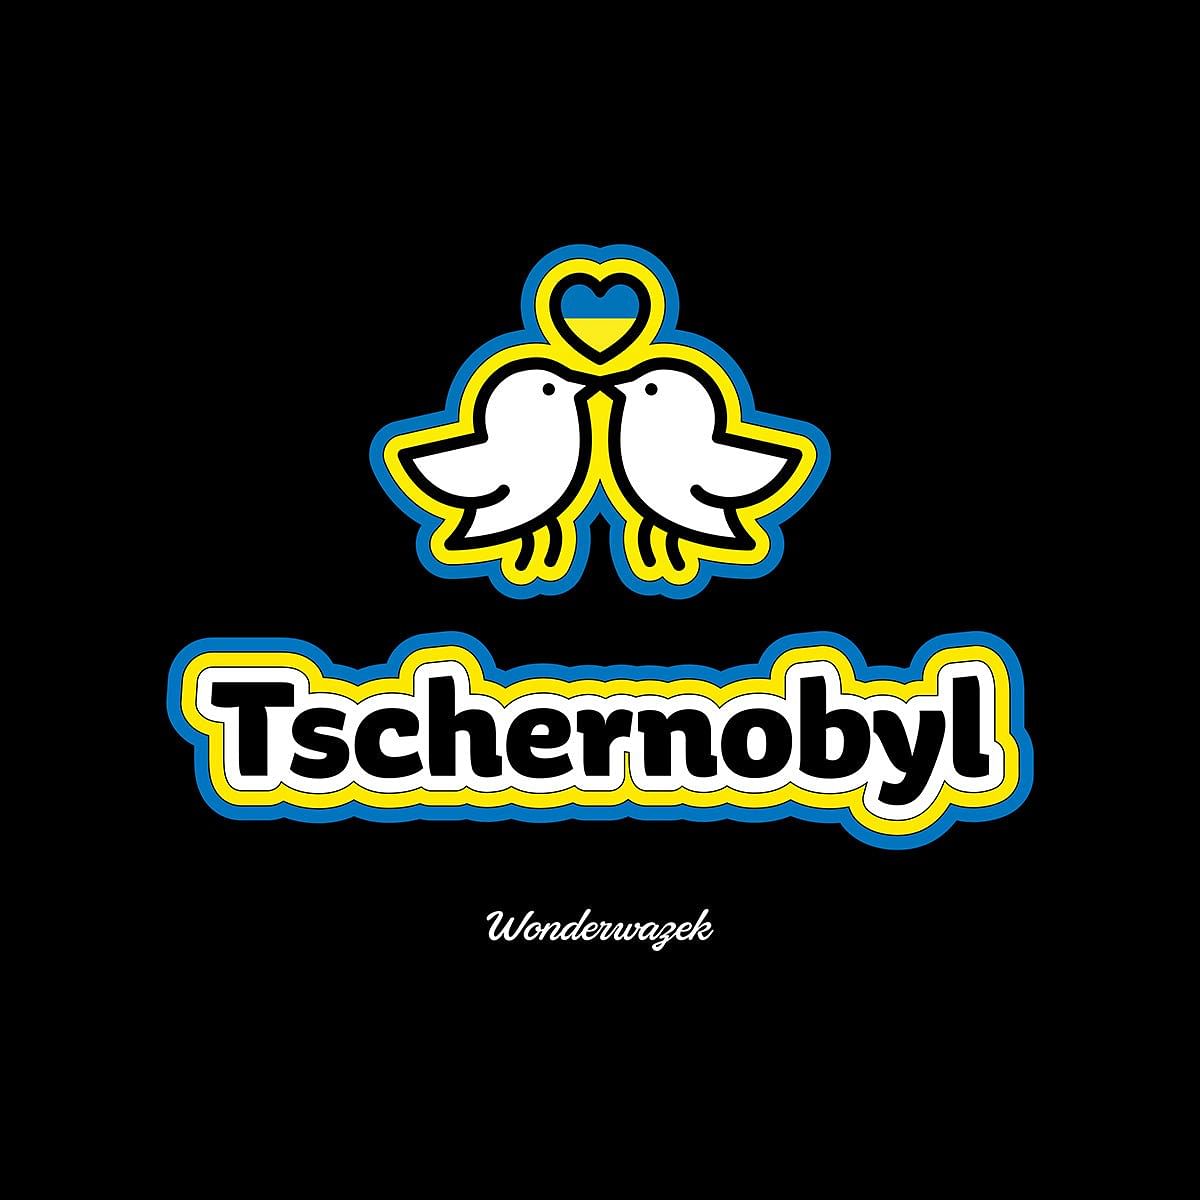 Einkaufstasche • Edition Friedenswazek – Tschernobyl - Wonderwazek